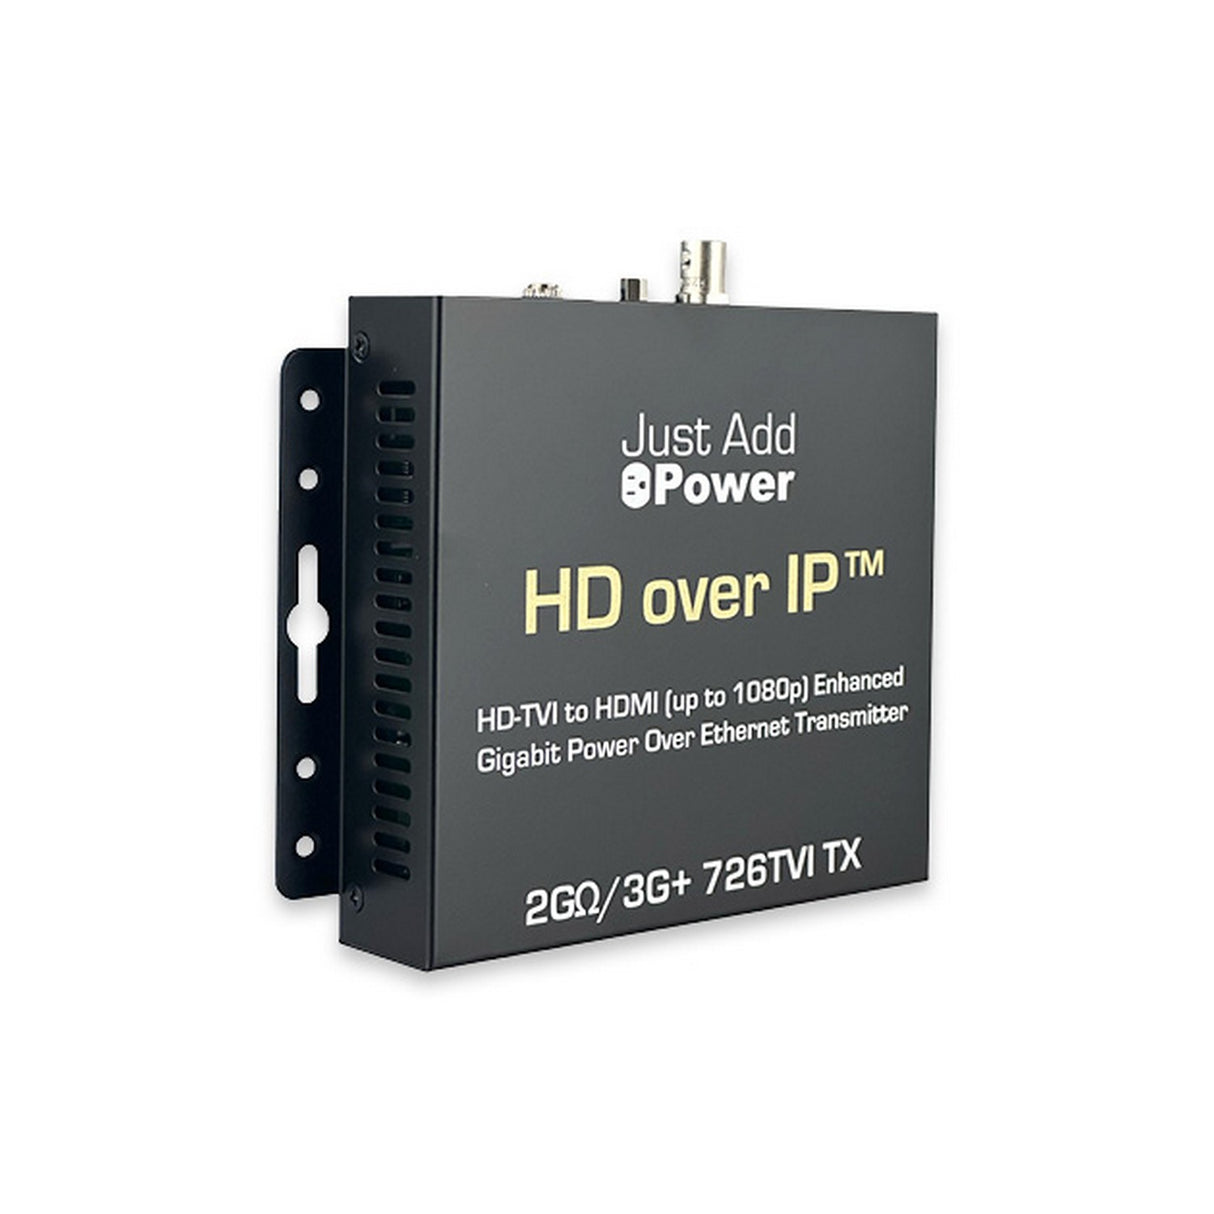 Just Add Power 2G/3G+ OMEGA 726TVI HD over IP Enhanced Gigabit Transmitter, HD-TVI/HDMI